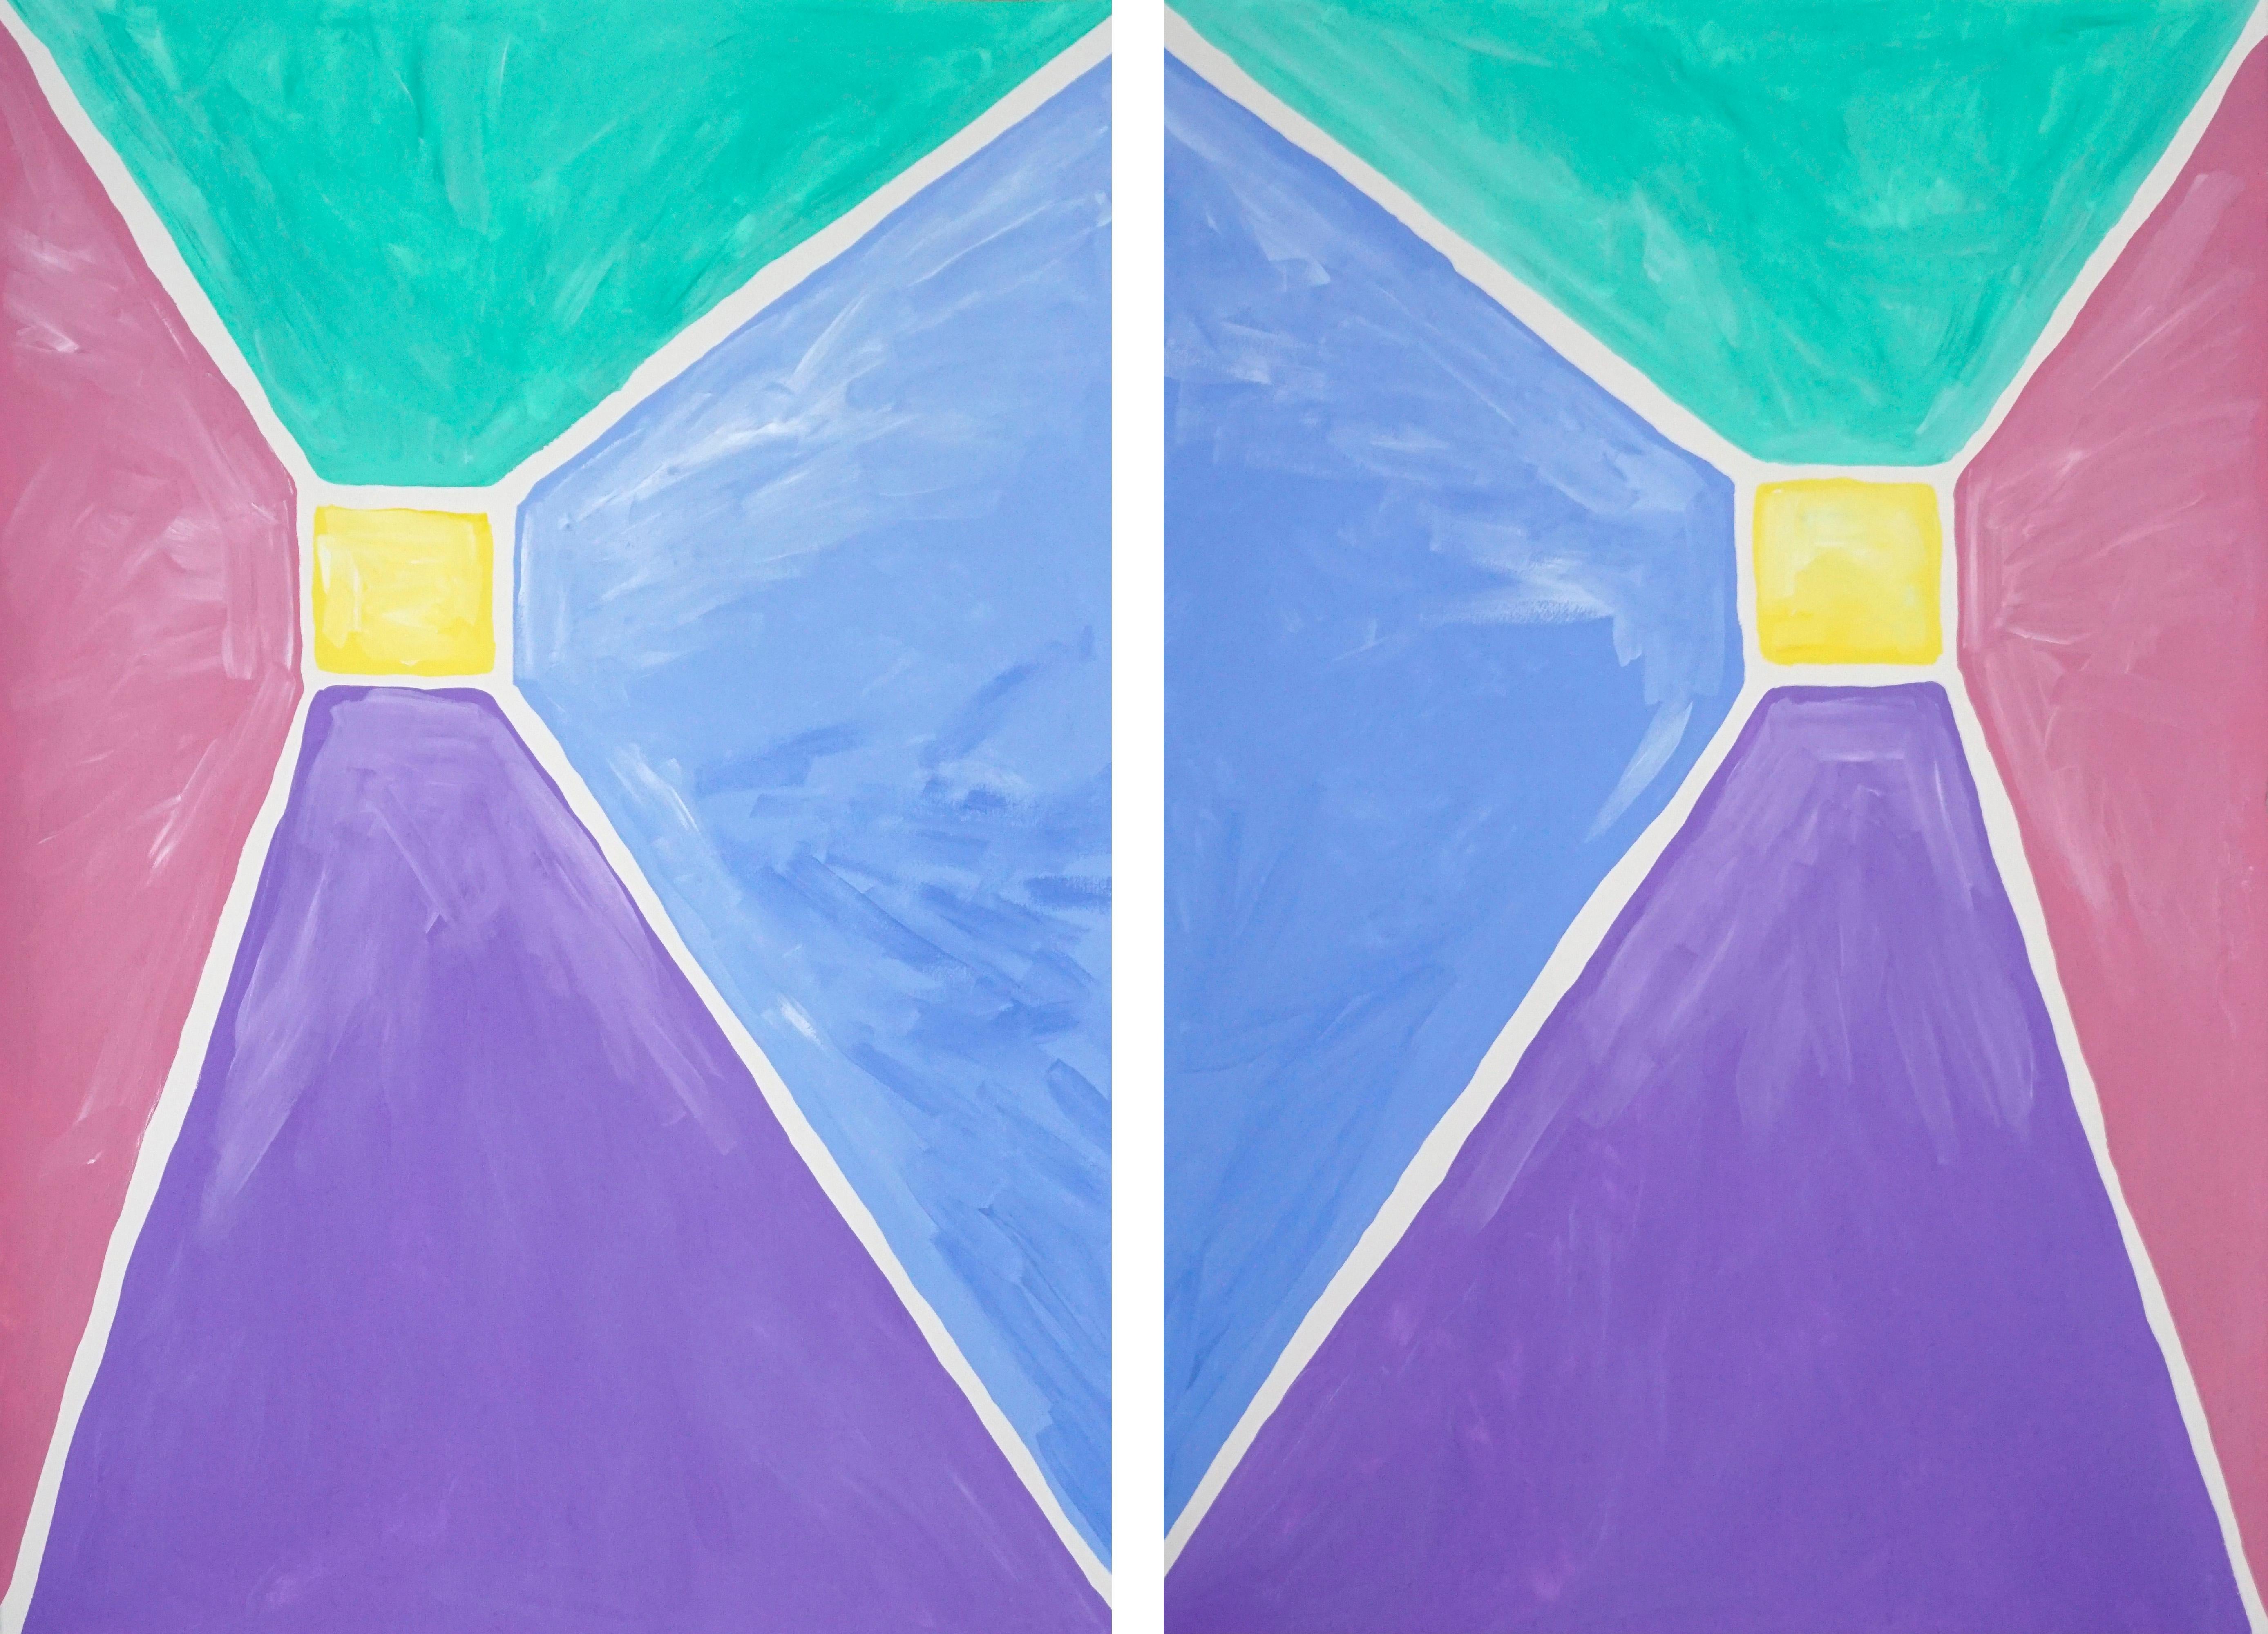 Diptyque pyramidal aux tons pastel, peinture acrylique sur papier, géométrique abstraite 